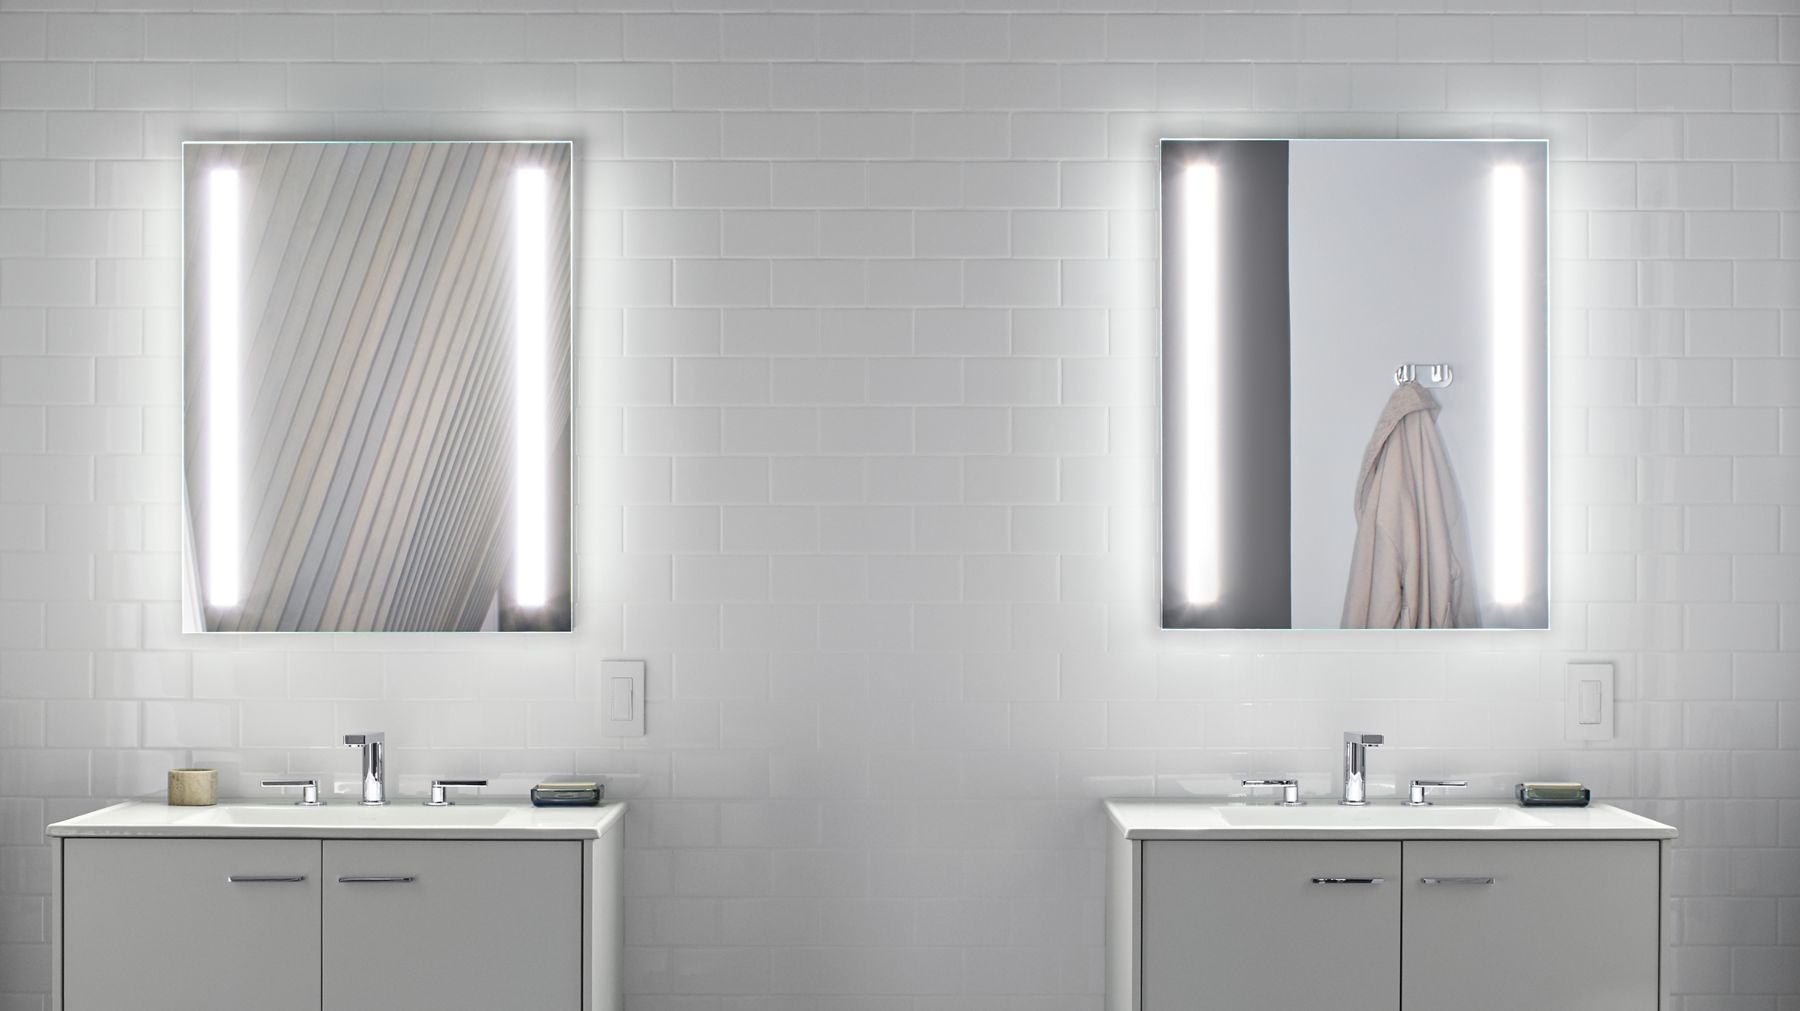 鏡面浴櫃和鏡子指南